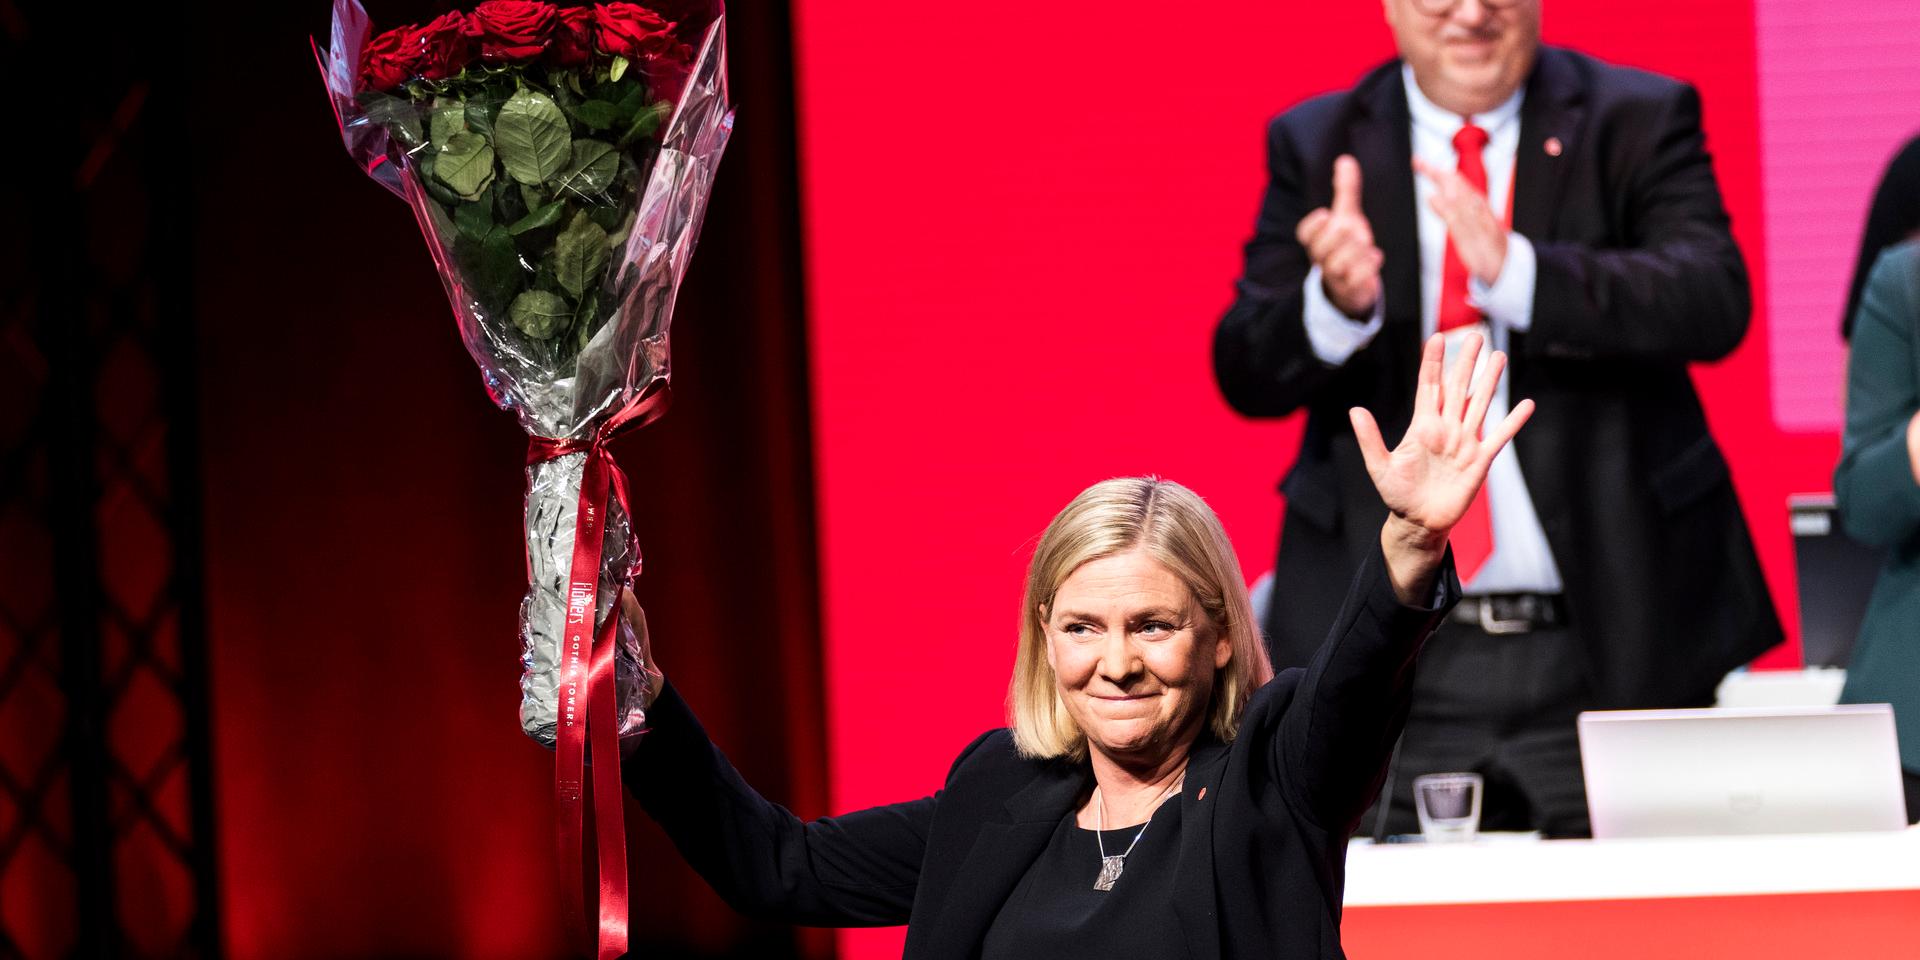 Magdalena Andersson är nu finansminister och partiledare för Socialdemokraterna. Inom kort kan hon även bli statsminister. Här med en jublande fd LO-ordförande i bakgrunden, Karl-Petter Thorwalsson.